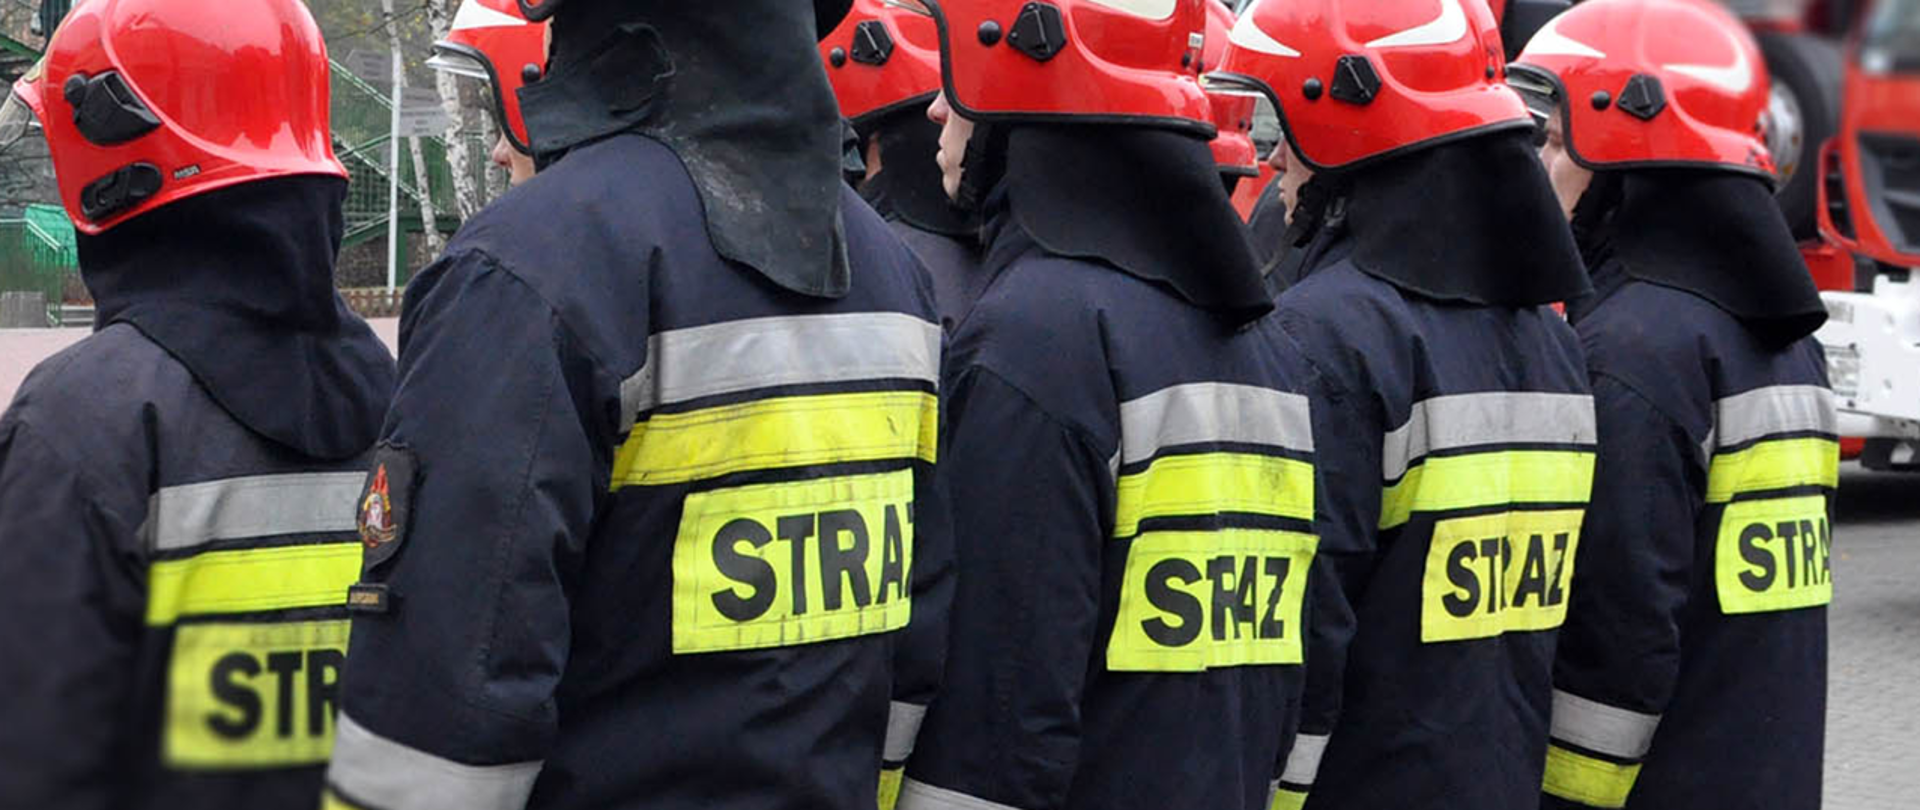 Na zdjęciu widać strażaków stojących w dwóch rzędach w umundurowaniu specjalnym z napisem "STRAŻ" na plecach.